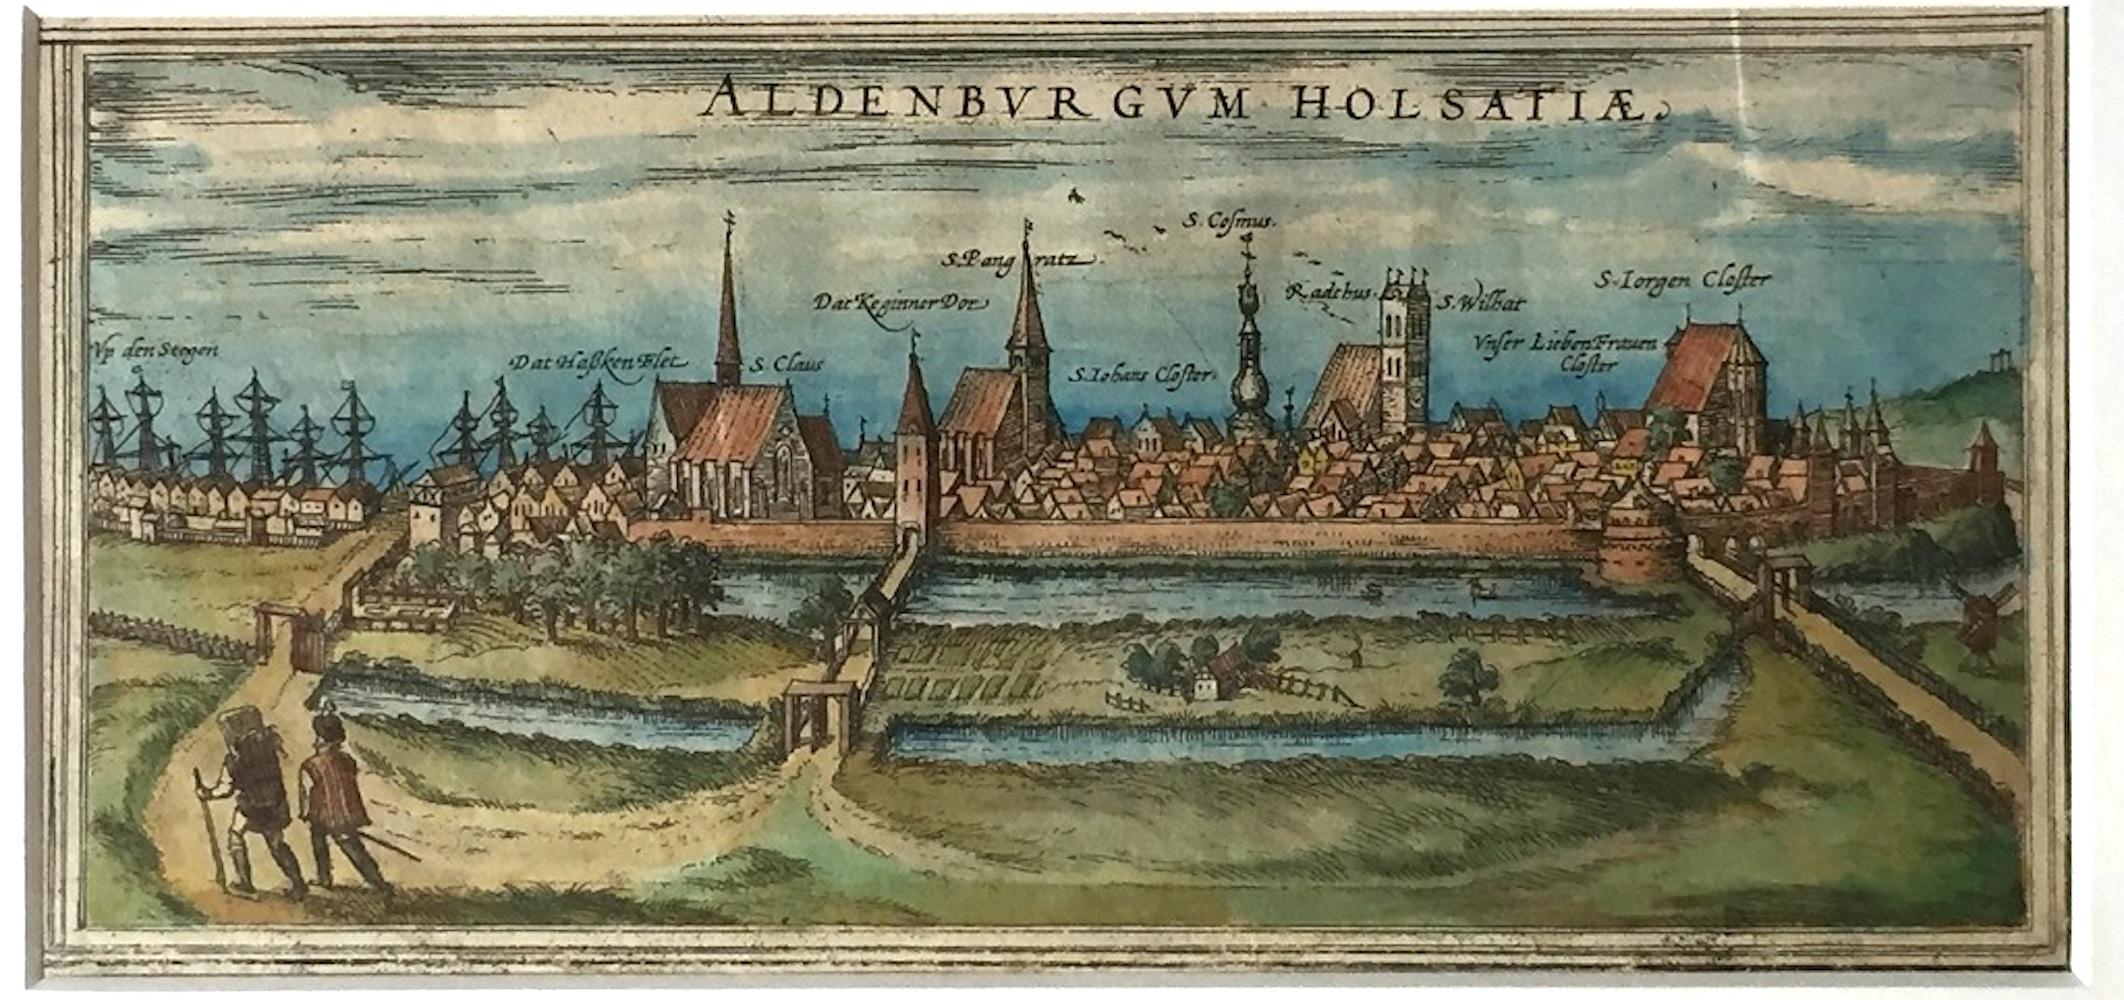 Frans Hogenberg Landscape Print - Map of Aldenburgum Holsatie - From "Civitates Orbium Terrarum" - 1575